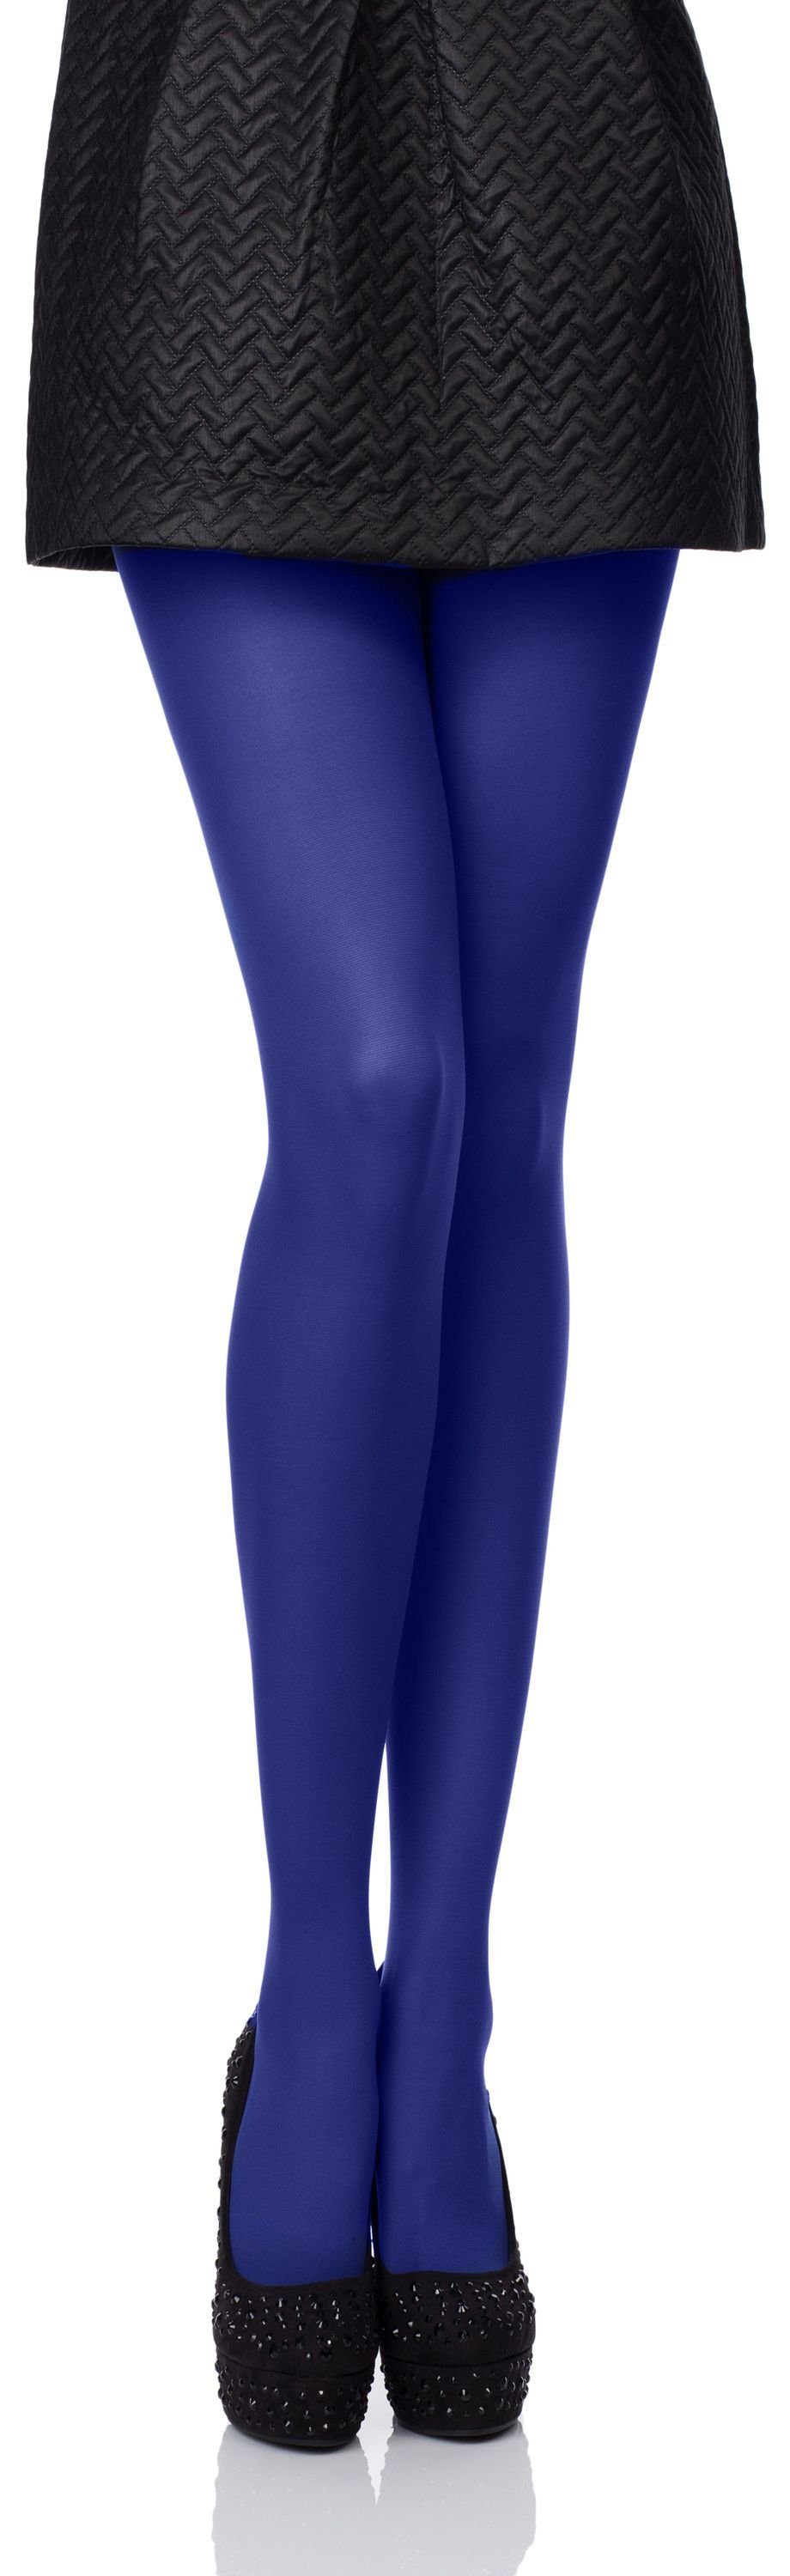 Blaue Strumpfhosen für Damen online kaufen | OTTO